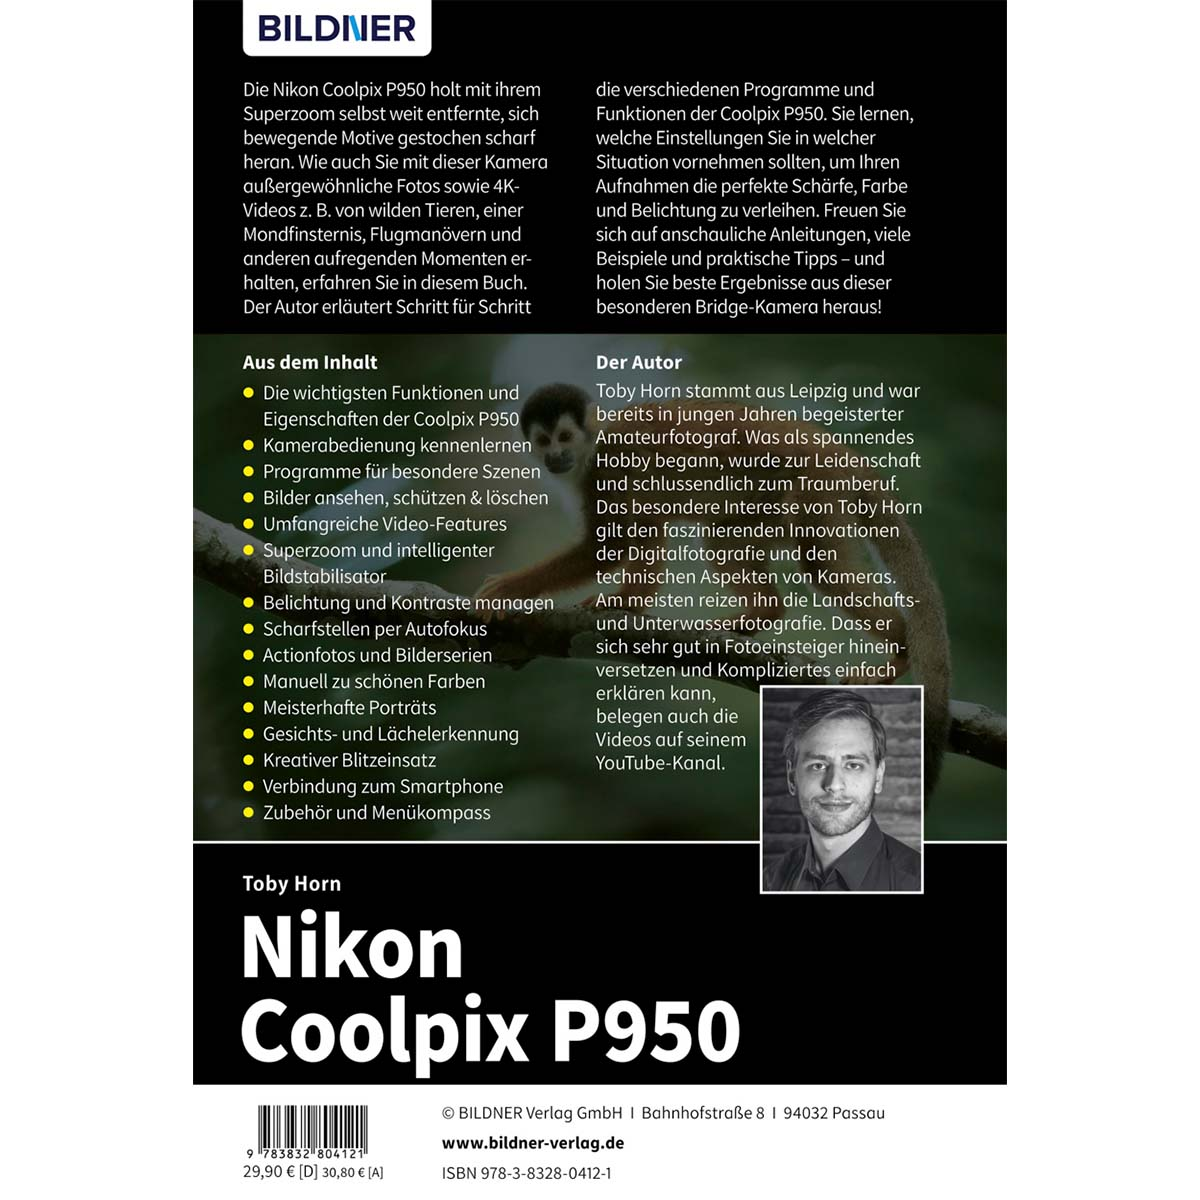 Nikon CoolPix zu Ihrer - Praxisbuch umfangreiche Kamera! P950 Das